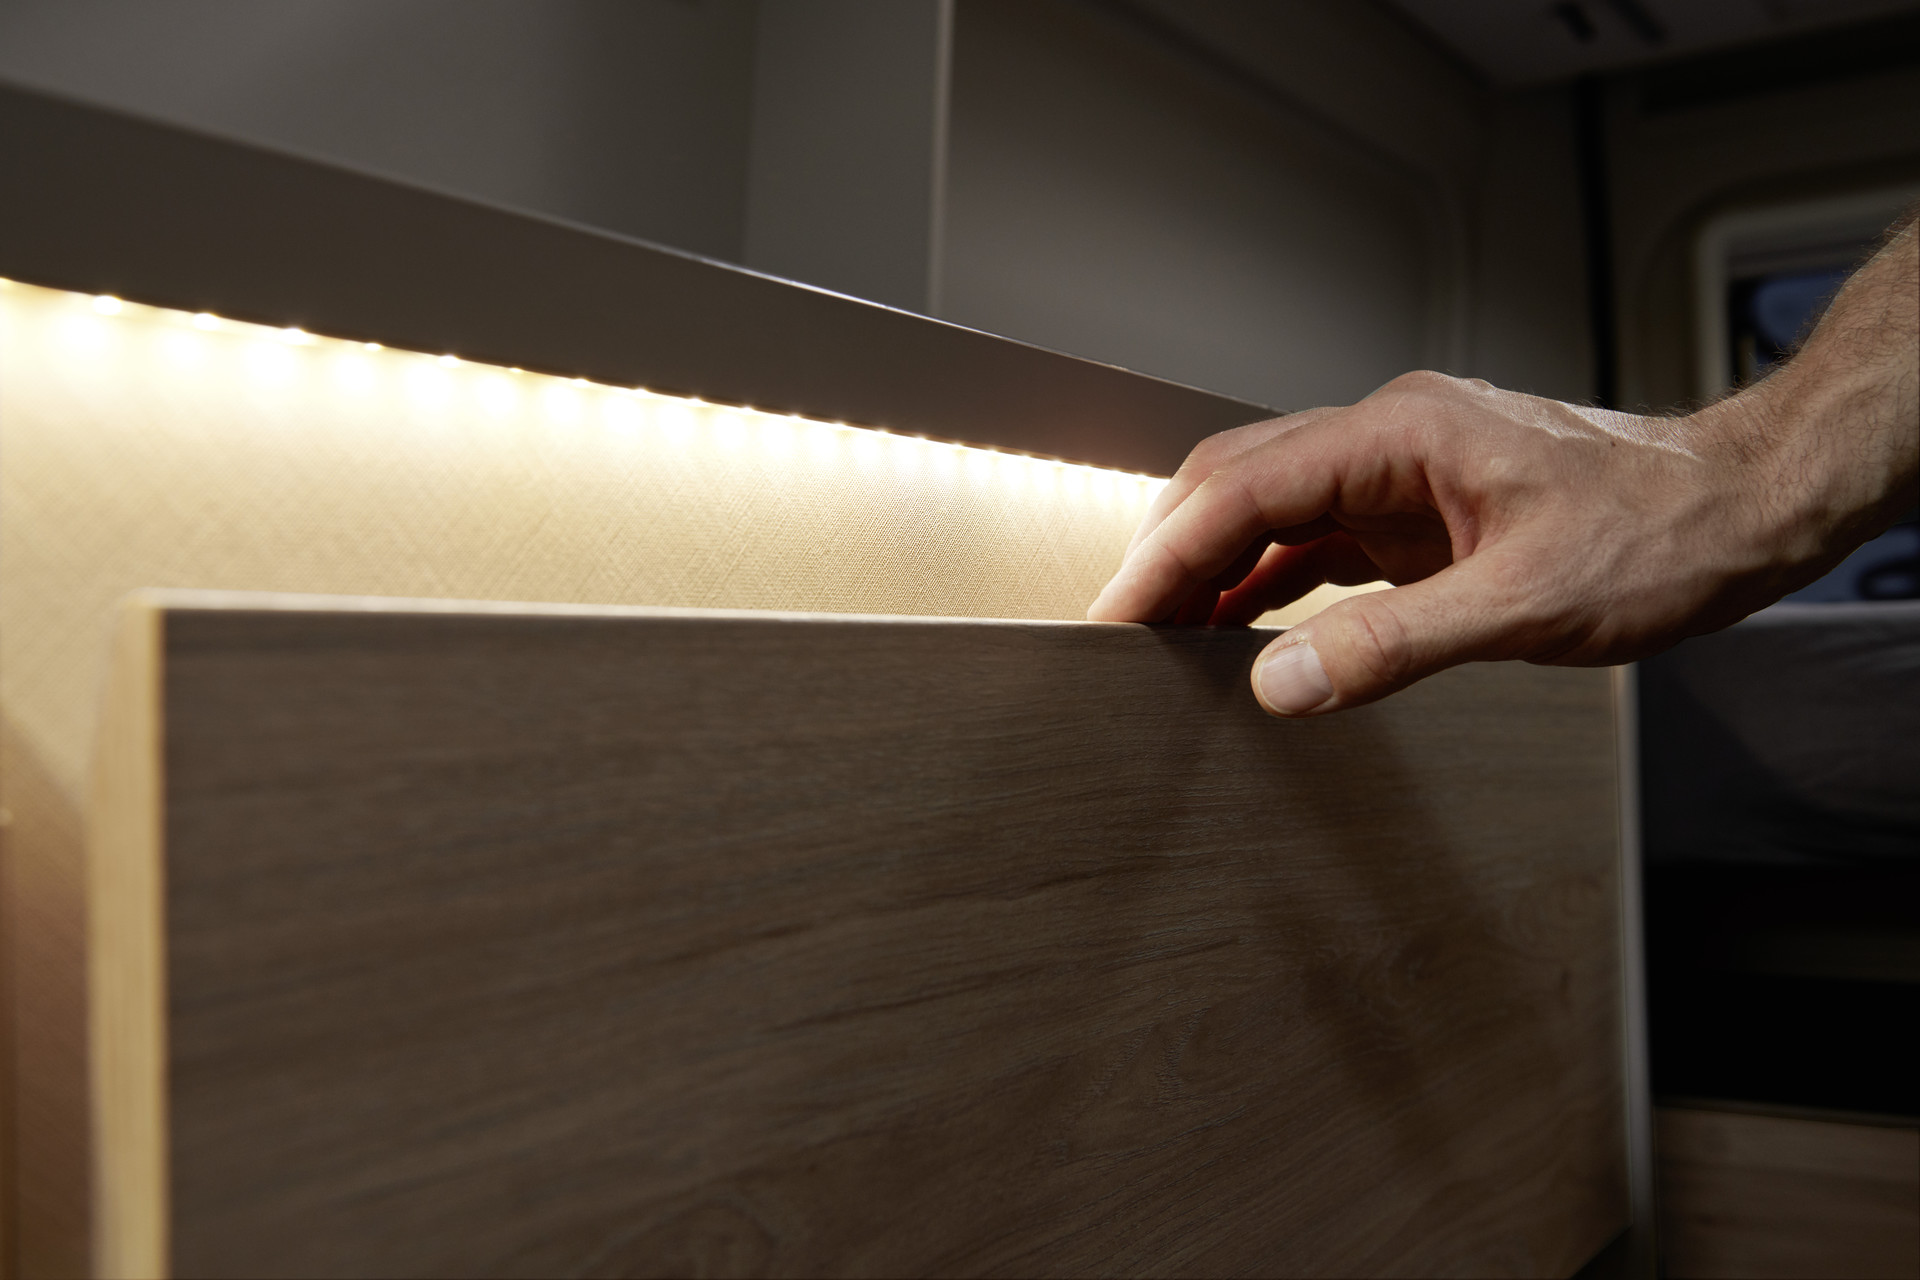 L‘illuminazione indiretta fornisce luce nel cassetto e allo stesso tempo crea un’atmosfera piacevole.